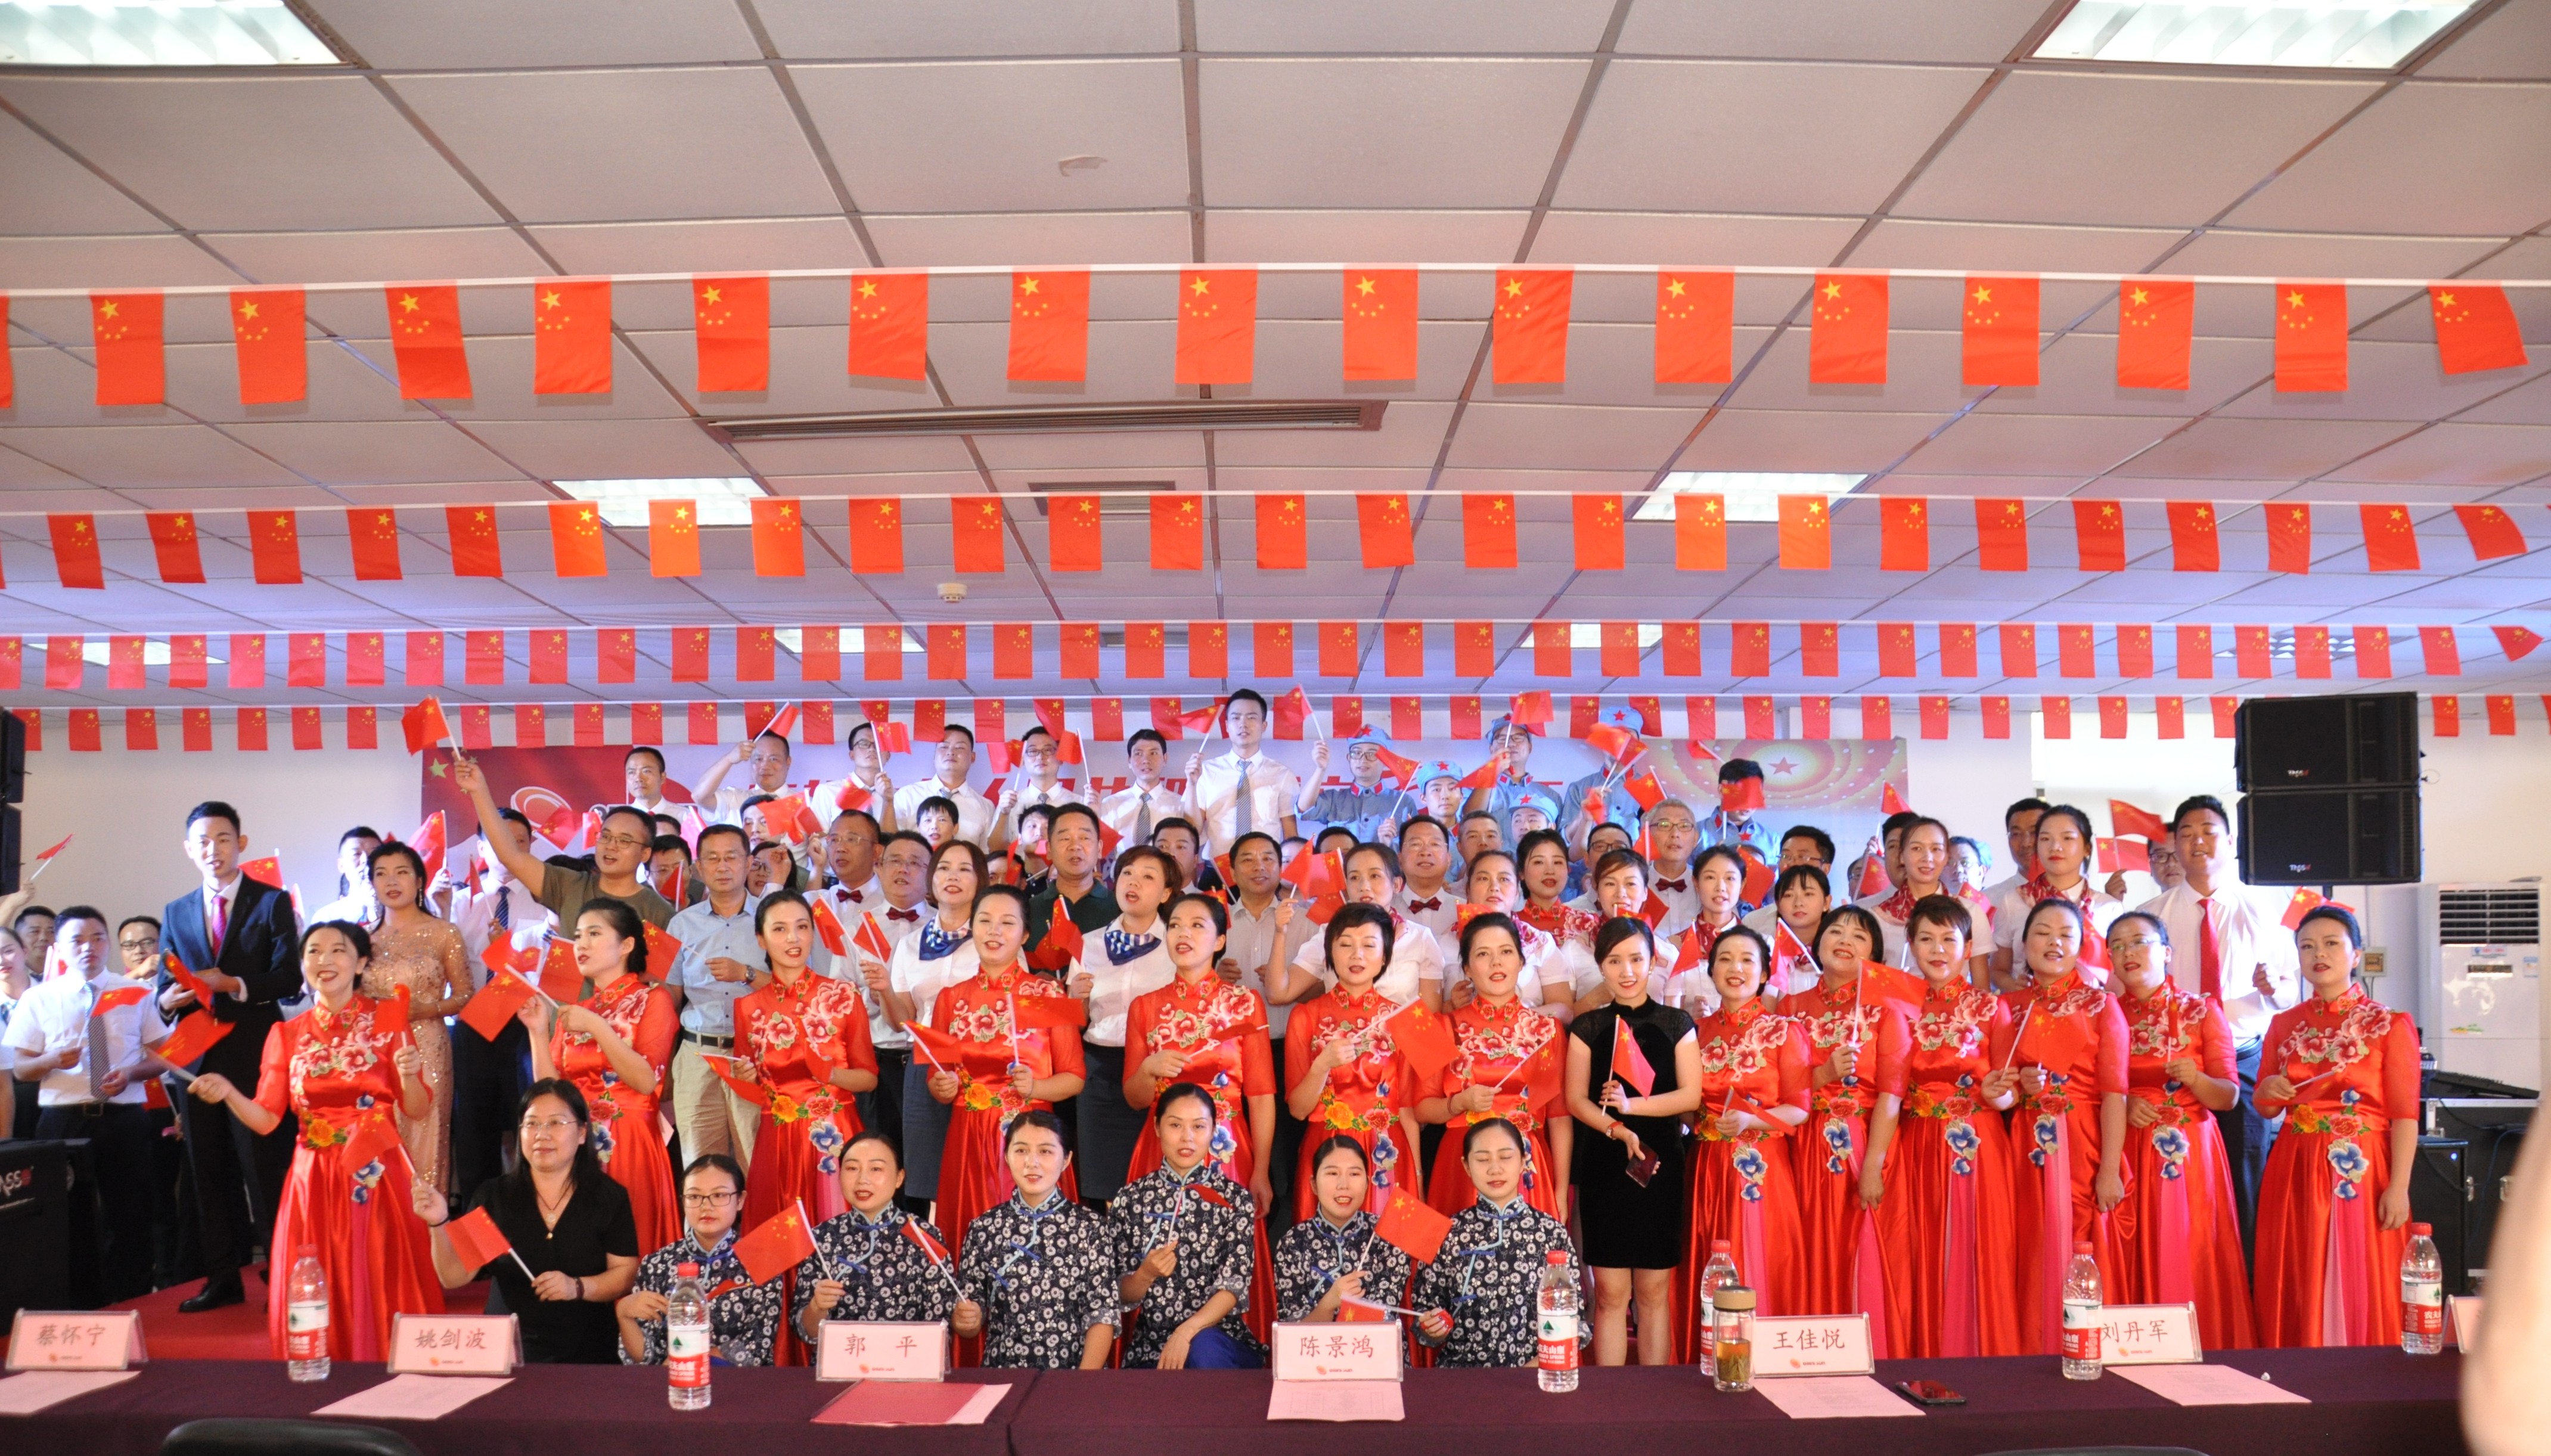 信产集团隆重举办庆祝中华人民共和国成立70周年“普照杯”歌咏比赛